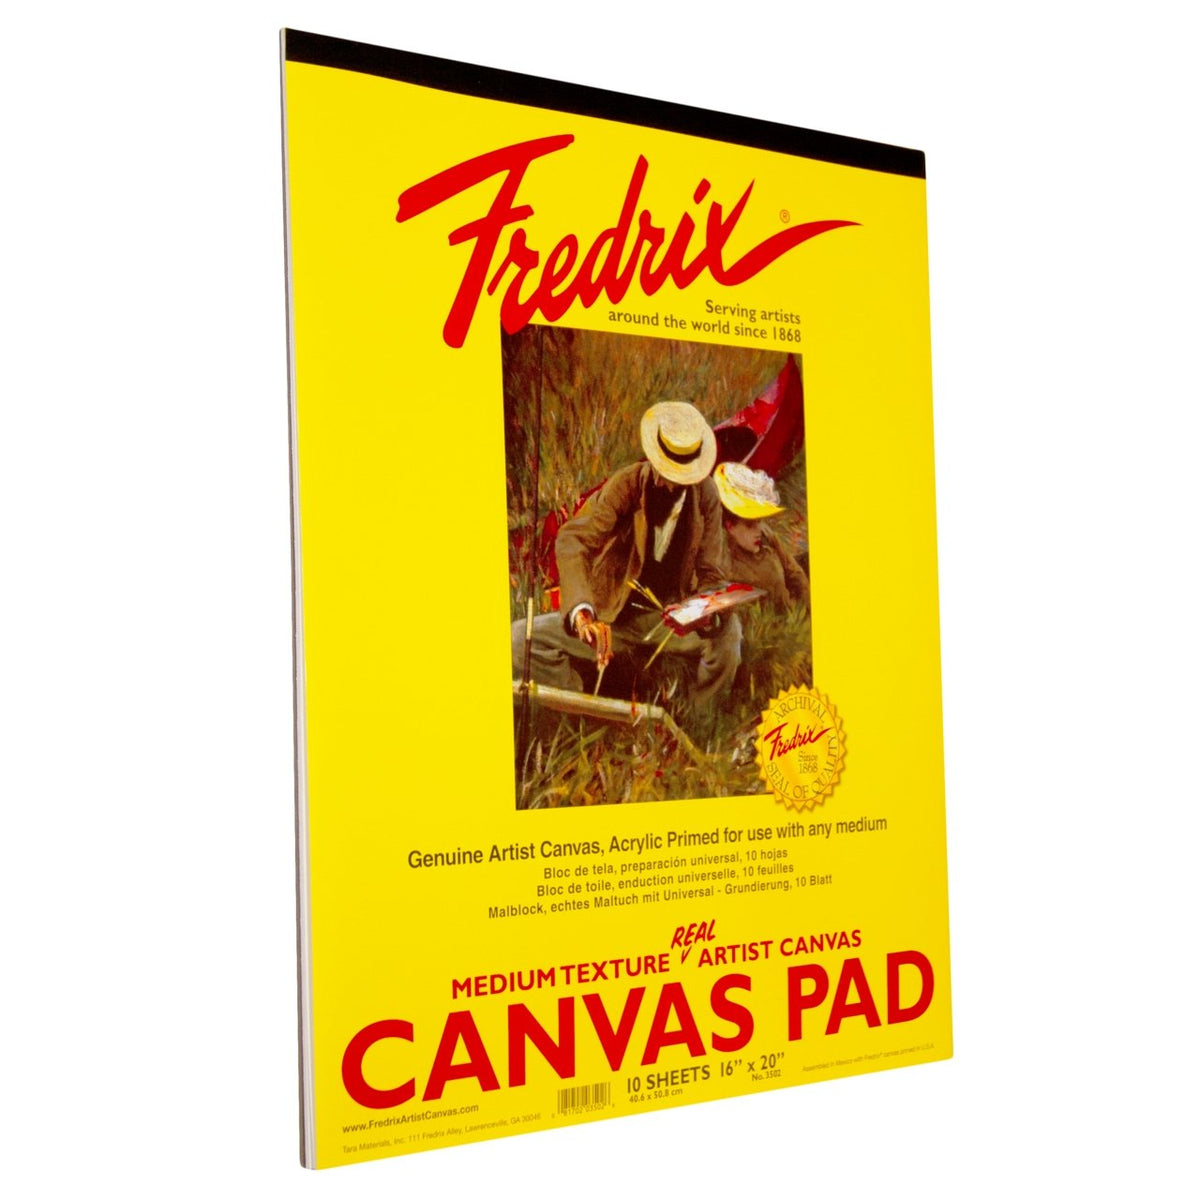 Fredrix Real Canvas Pad 16X20 - merriartist.com